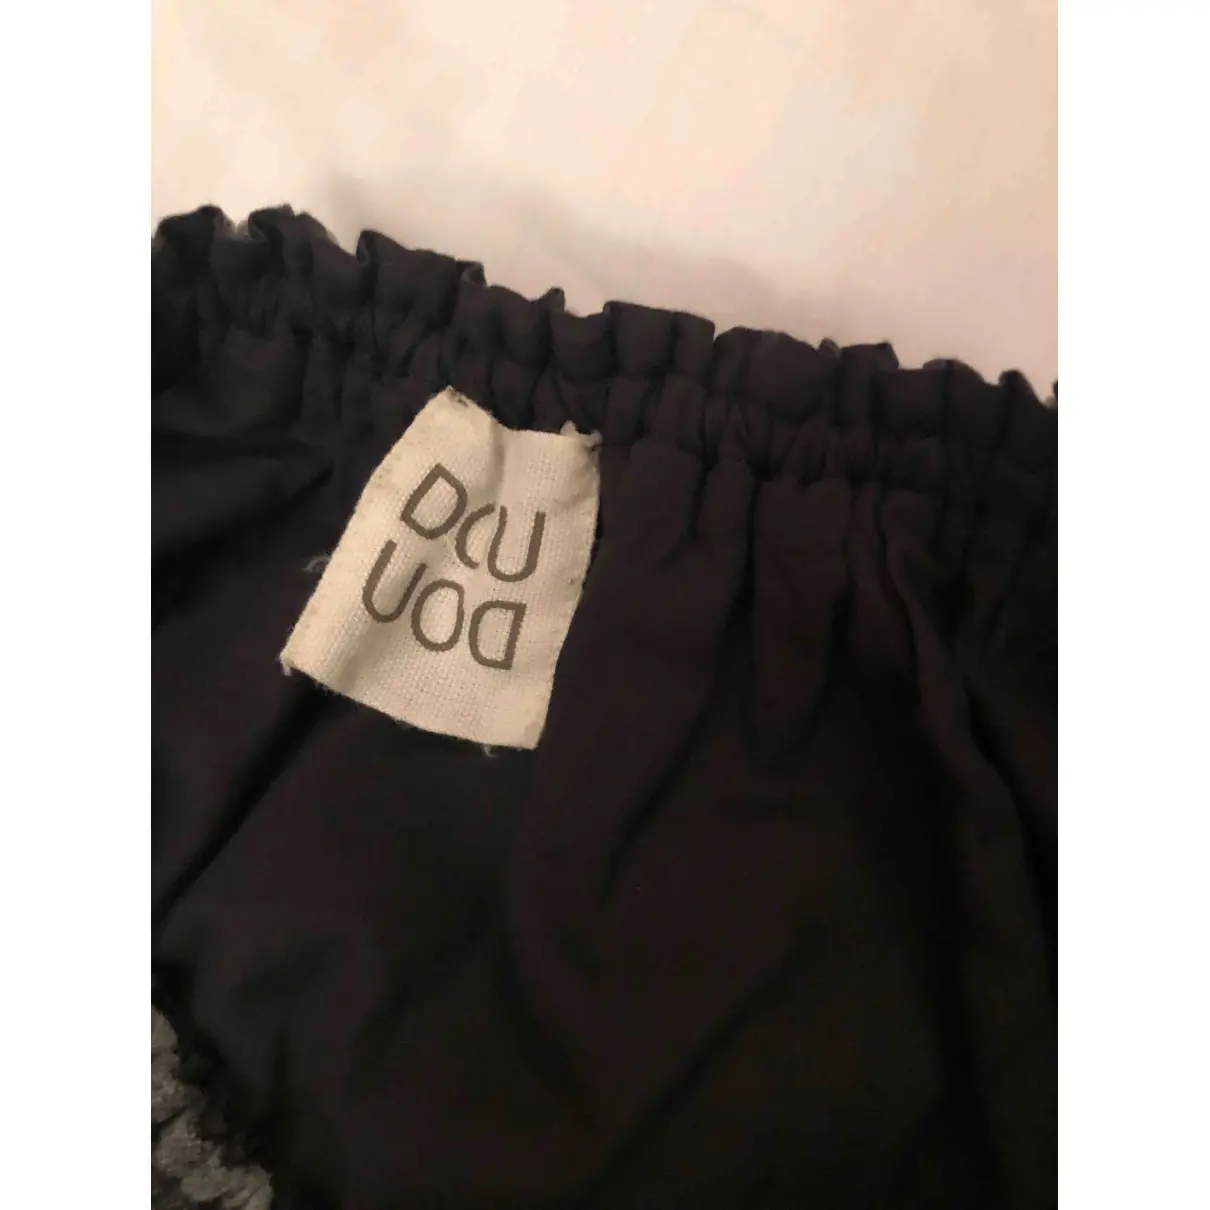 Buy Douuod Wool mini skirt online